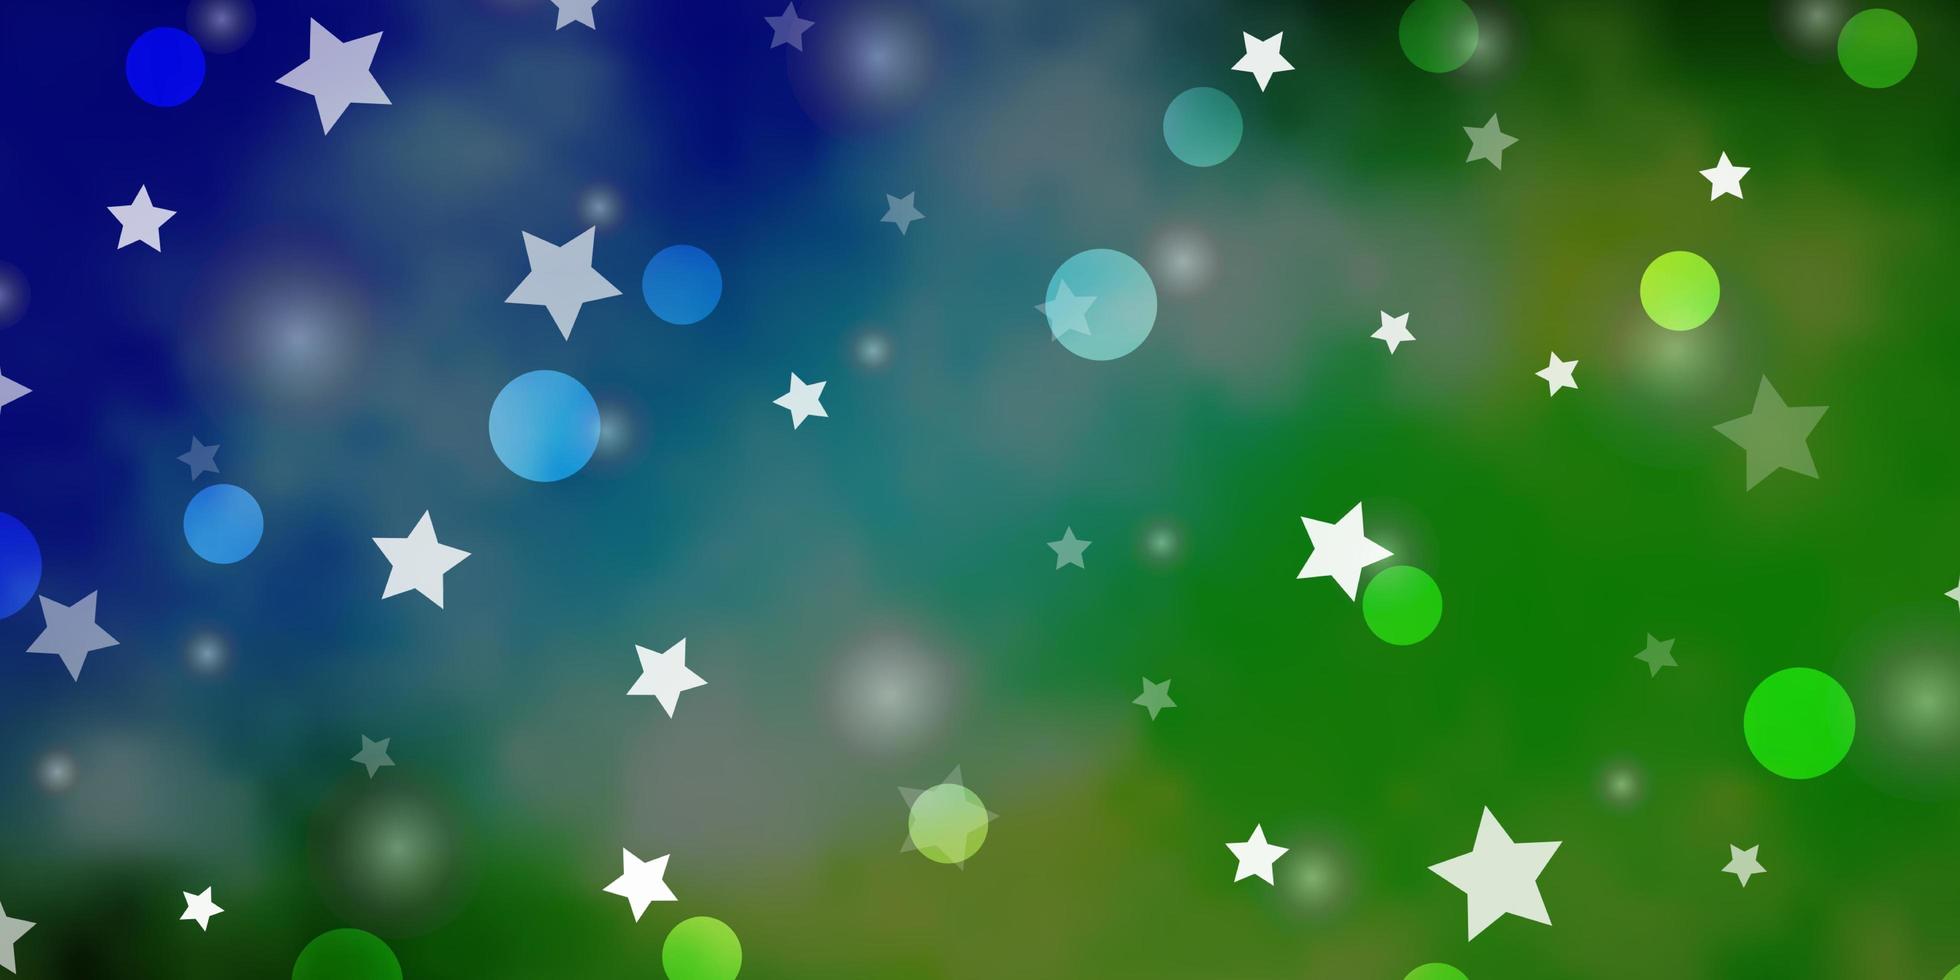 ljusblå, grön vektorstruktur med cirklar, stjärnor. färgglada skivor, stjärnor på enkel tonad bakgrund. mönster för trendigt tyg, tapeter. vektor